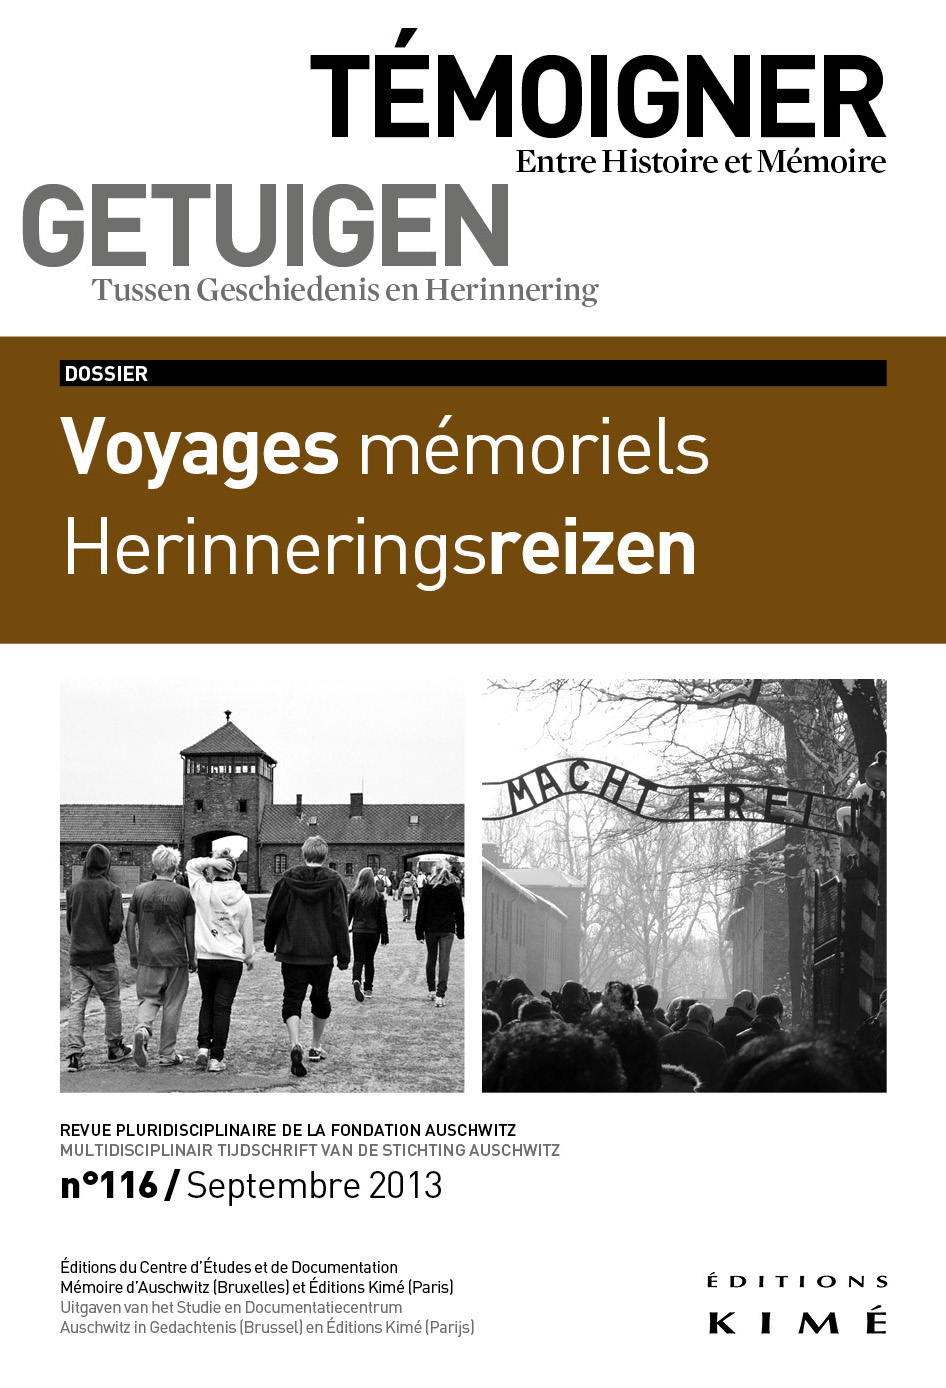 N° 116 (09/2013) Voyages mémoriels